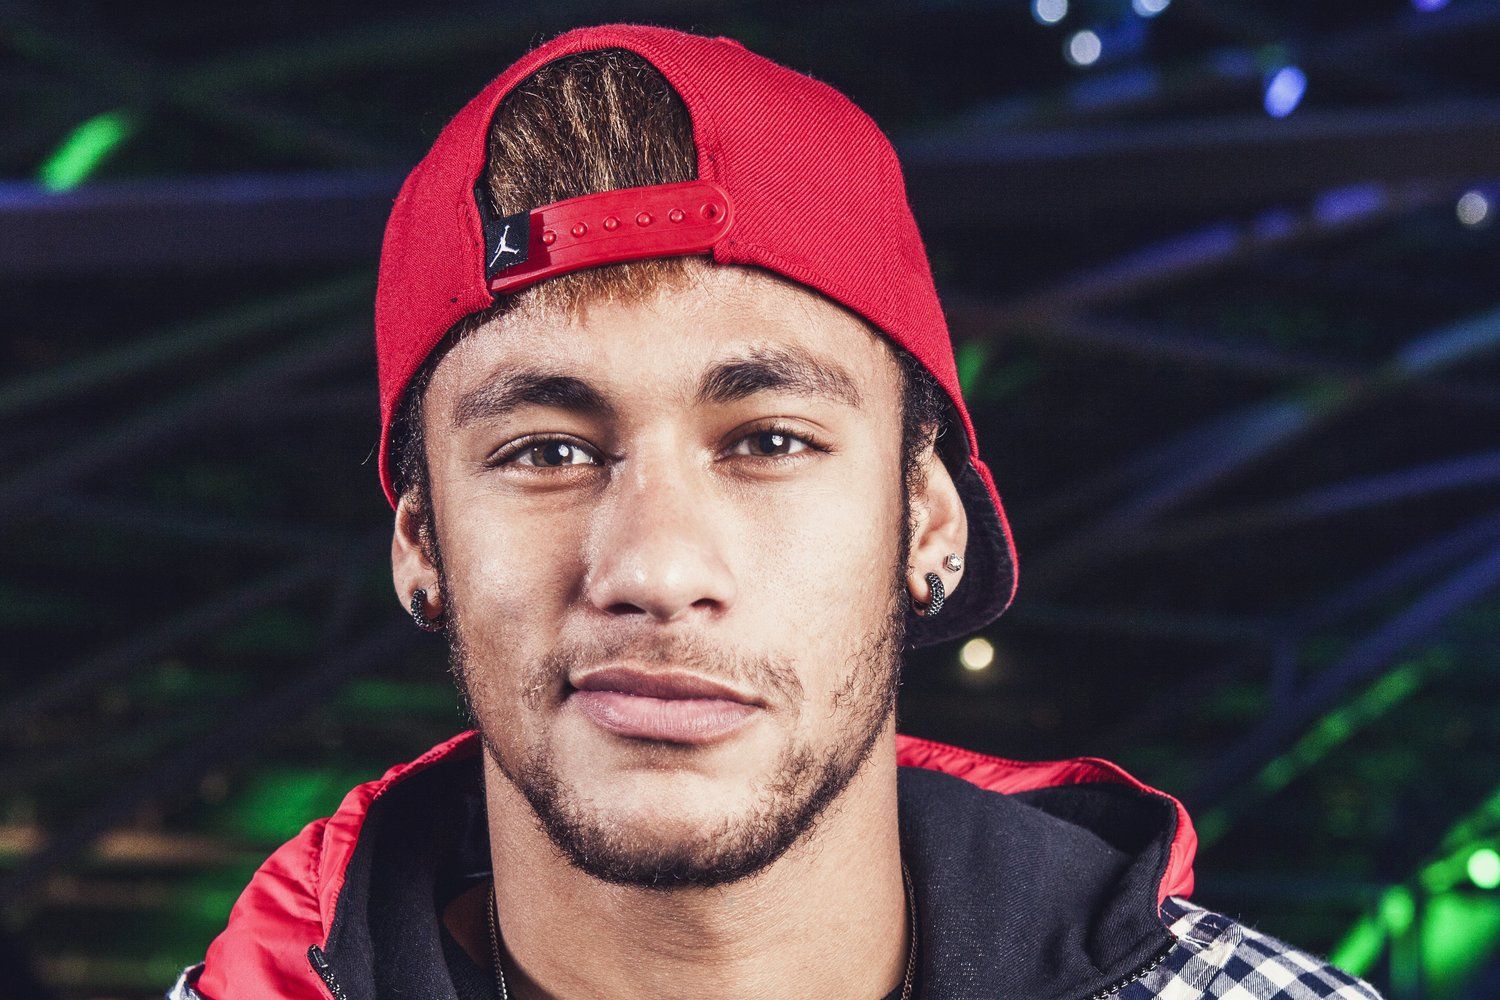 Tổng hợp hình ảnh Neymar Jr đẹp mắt, full HD